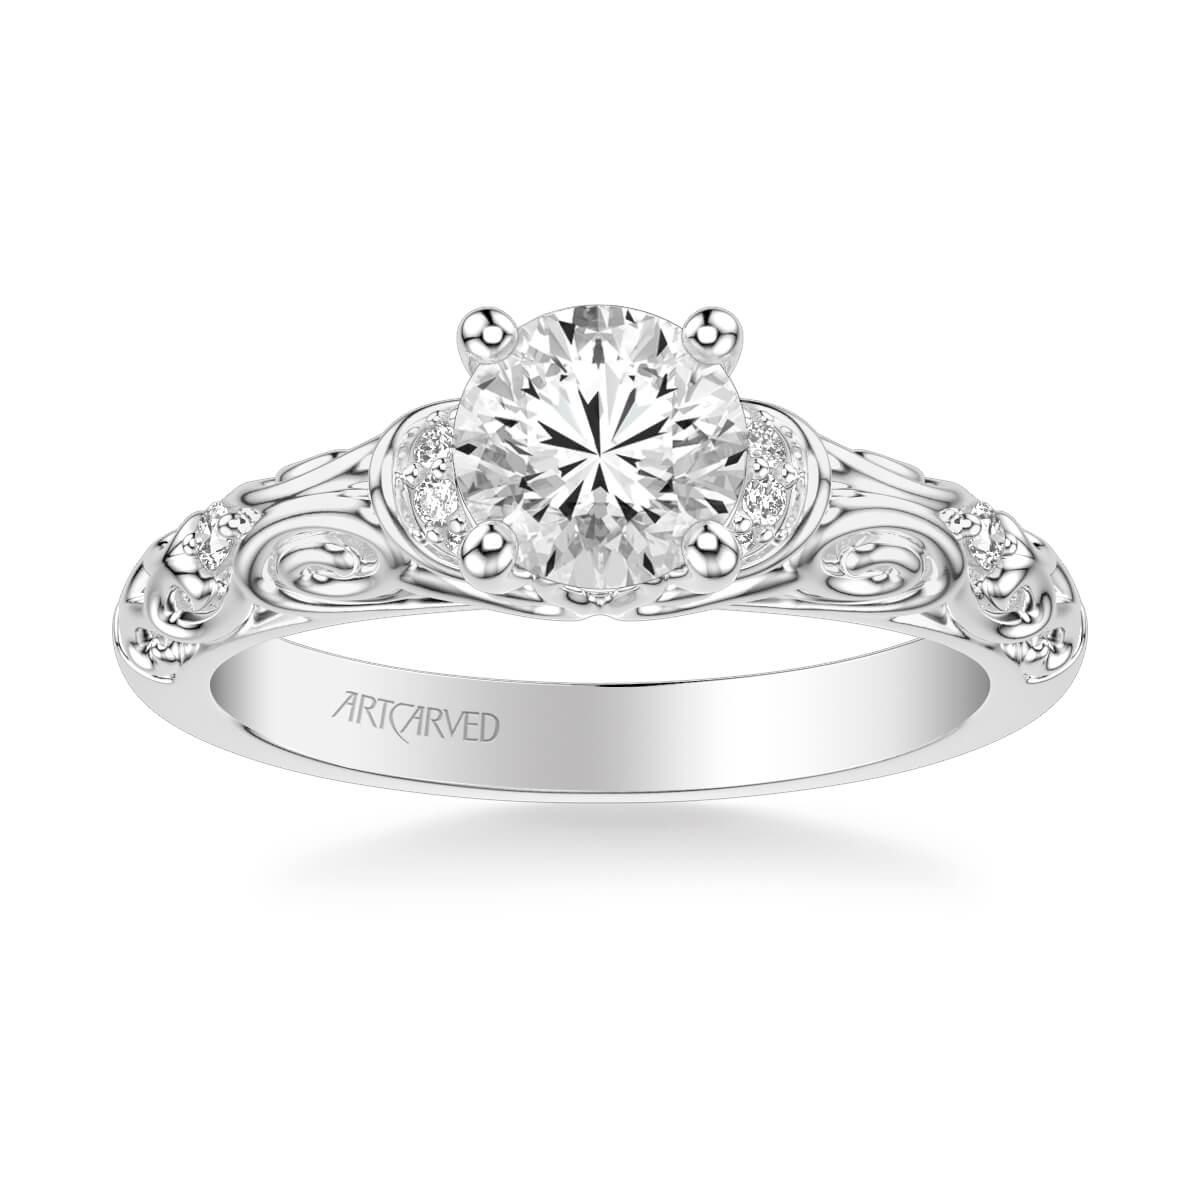 Artcarved Peyton Diamond Engagement Ring | Ben Garelick Jewelers